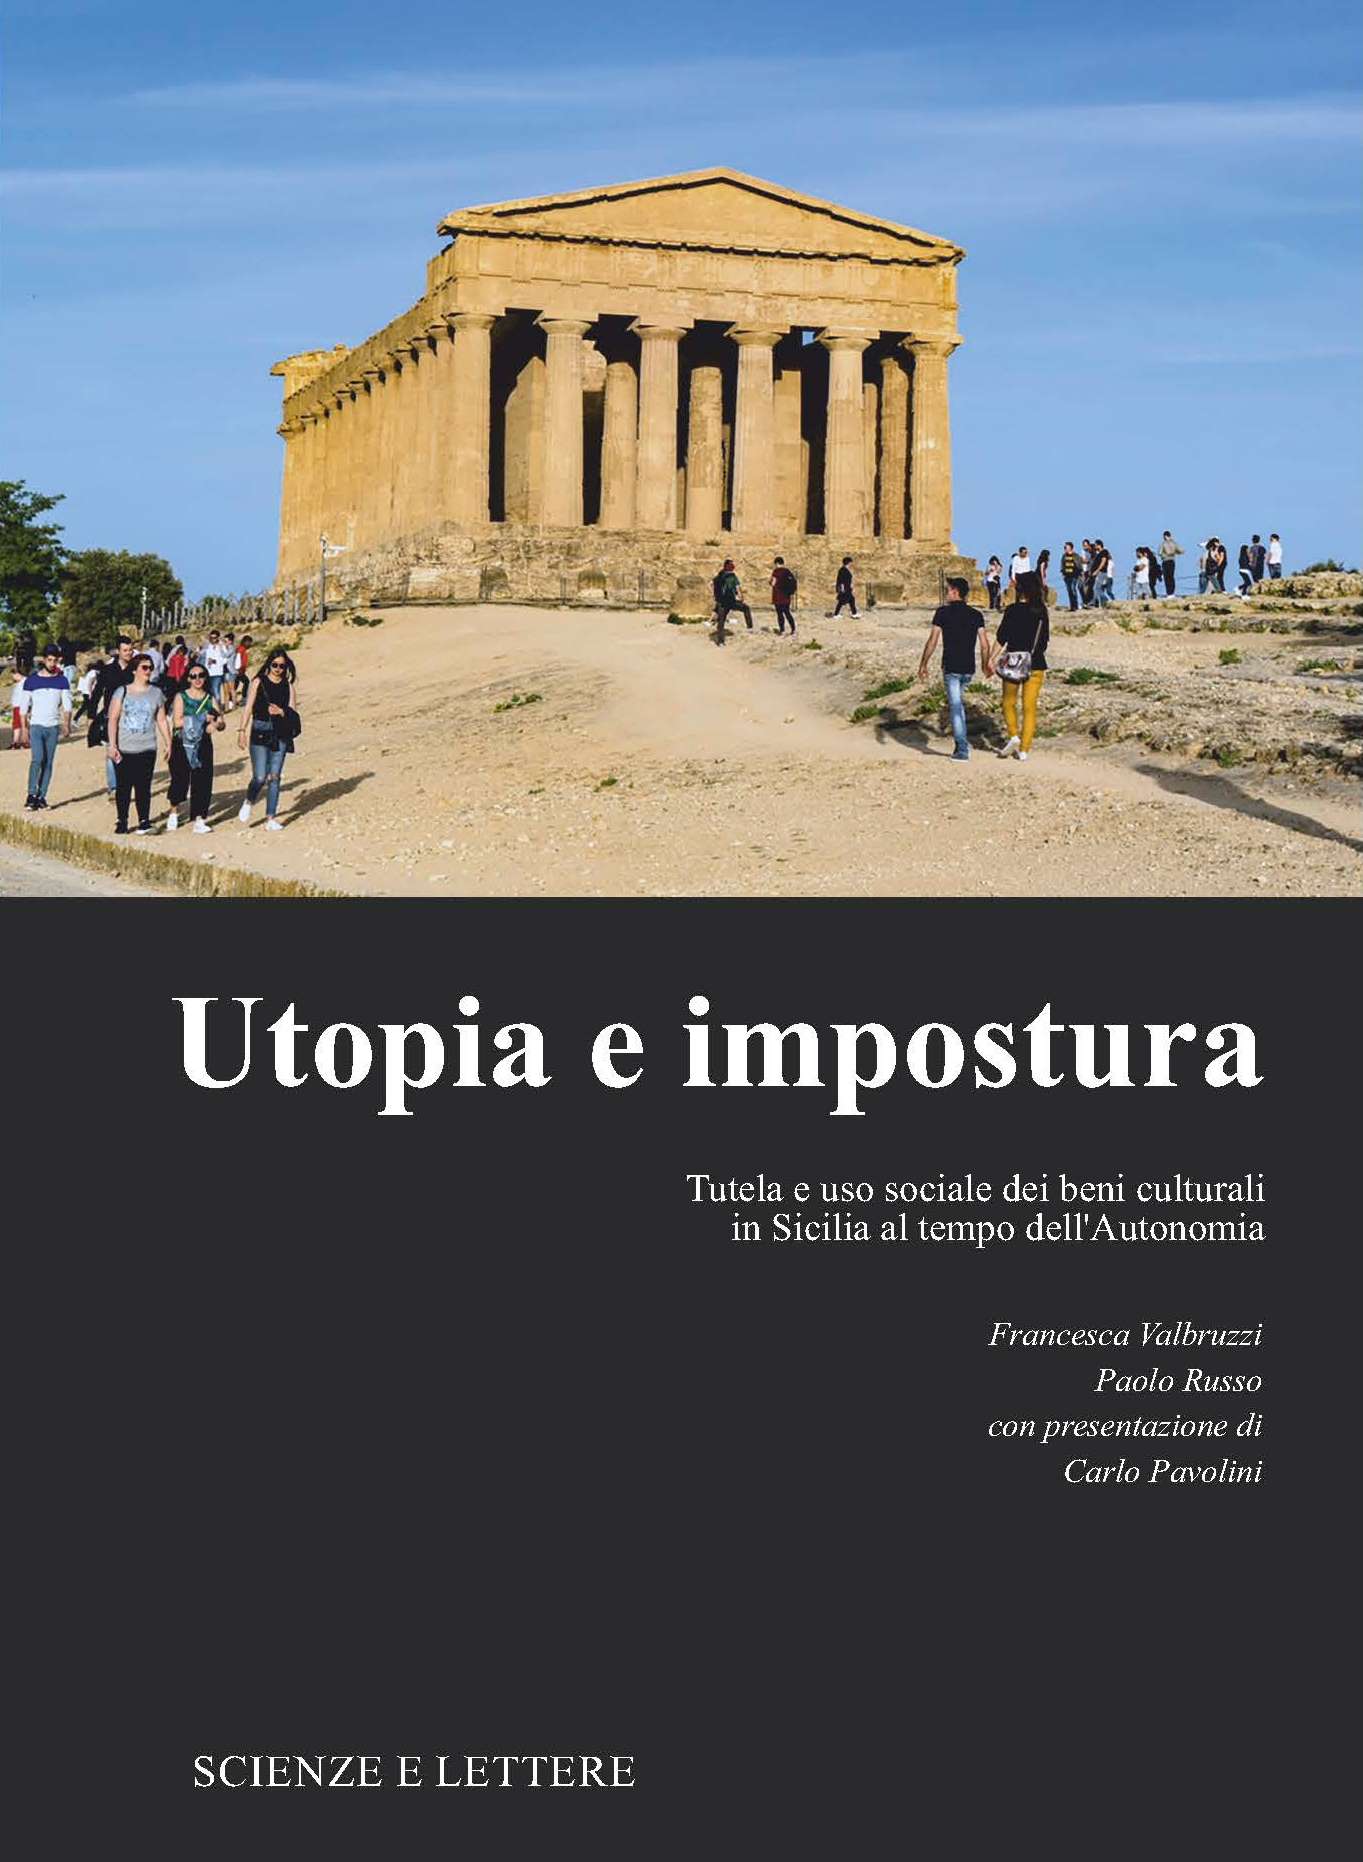 UTOPIA E IMPOSTURA<br/>

Tutela e uso sociale dei beni culturali in Sicilia al tempo dell'Autonomia
